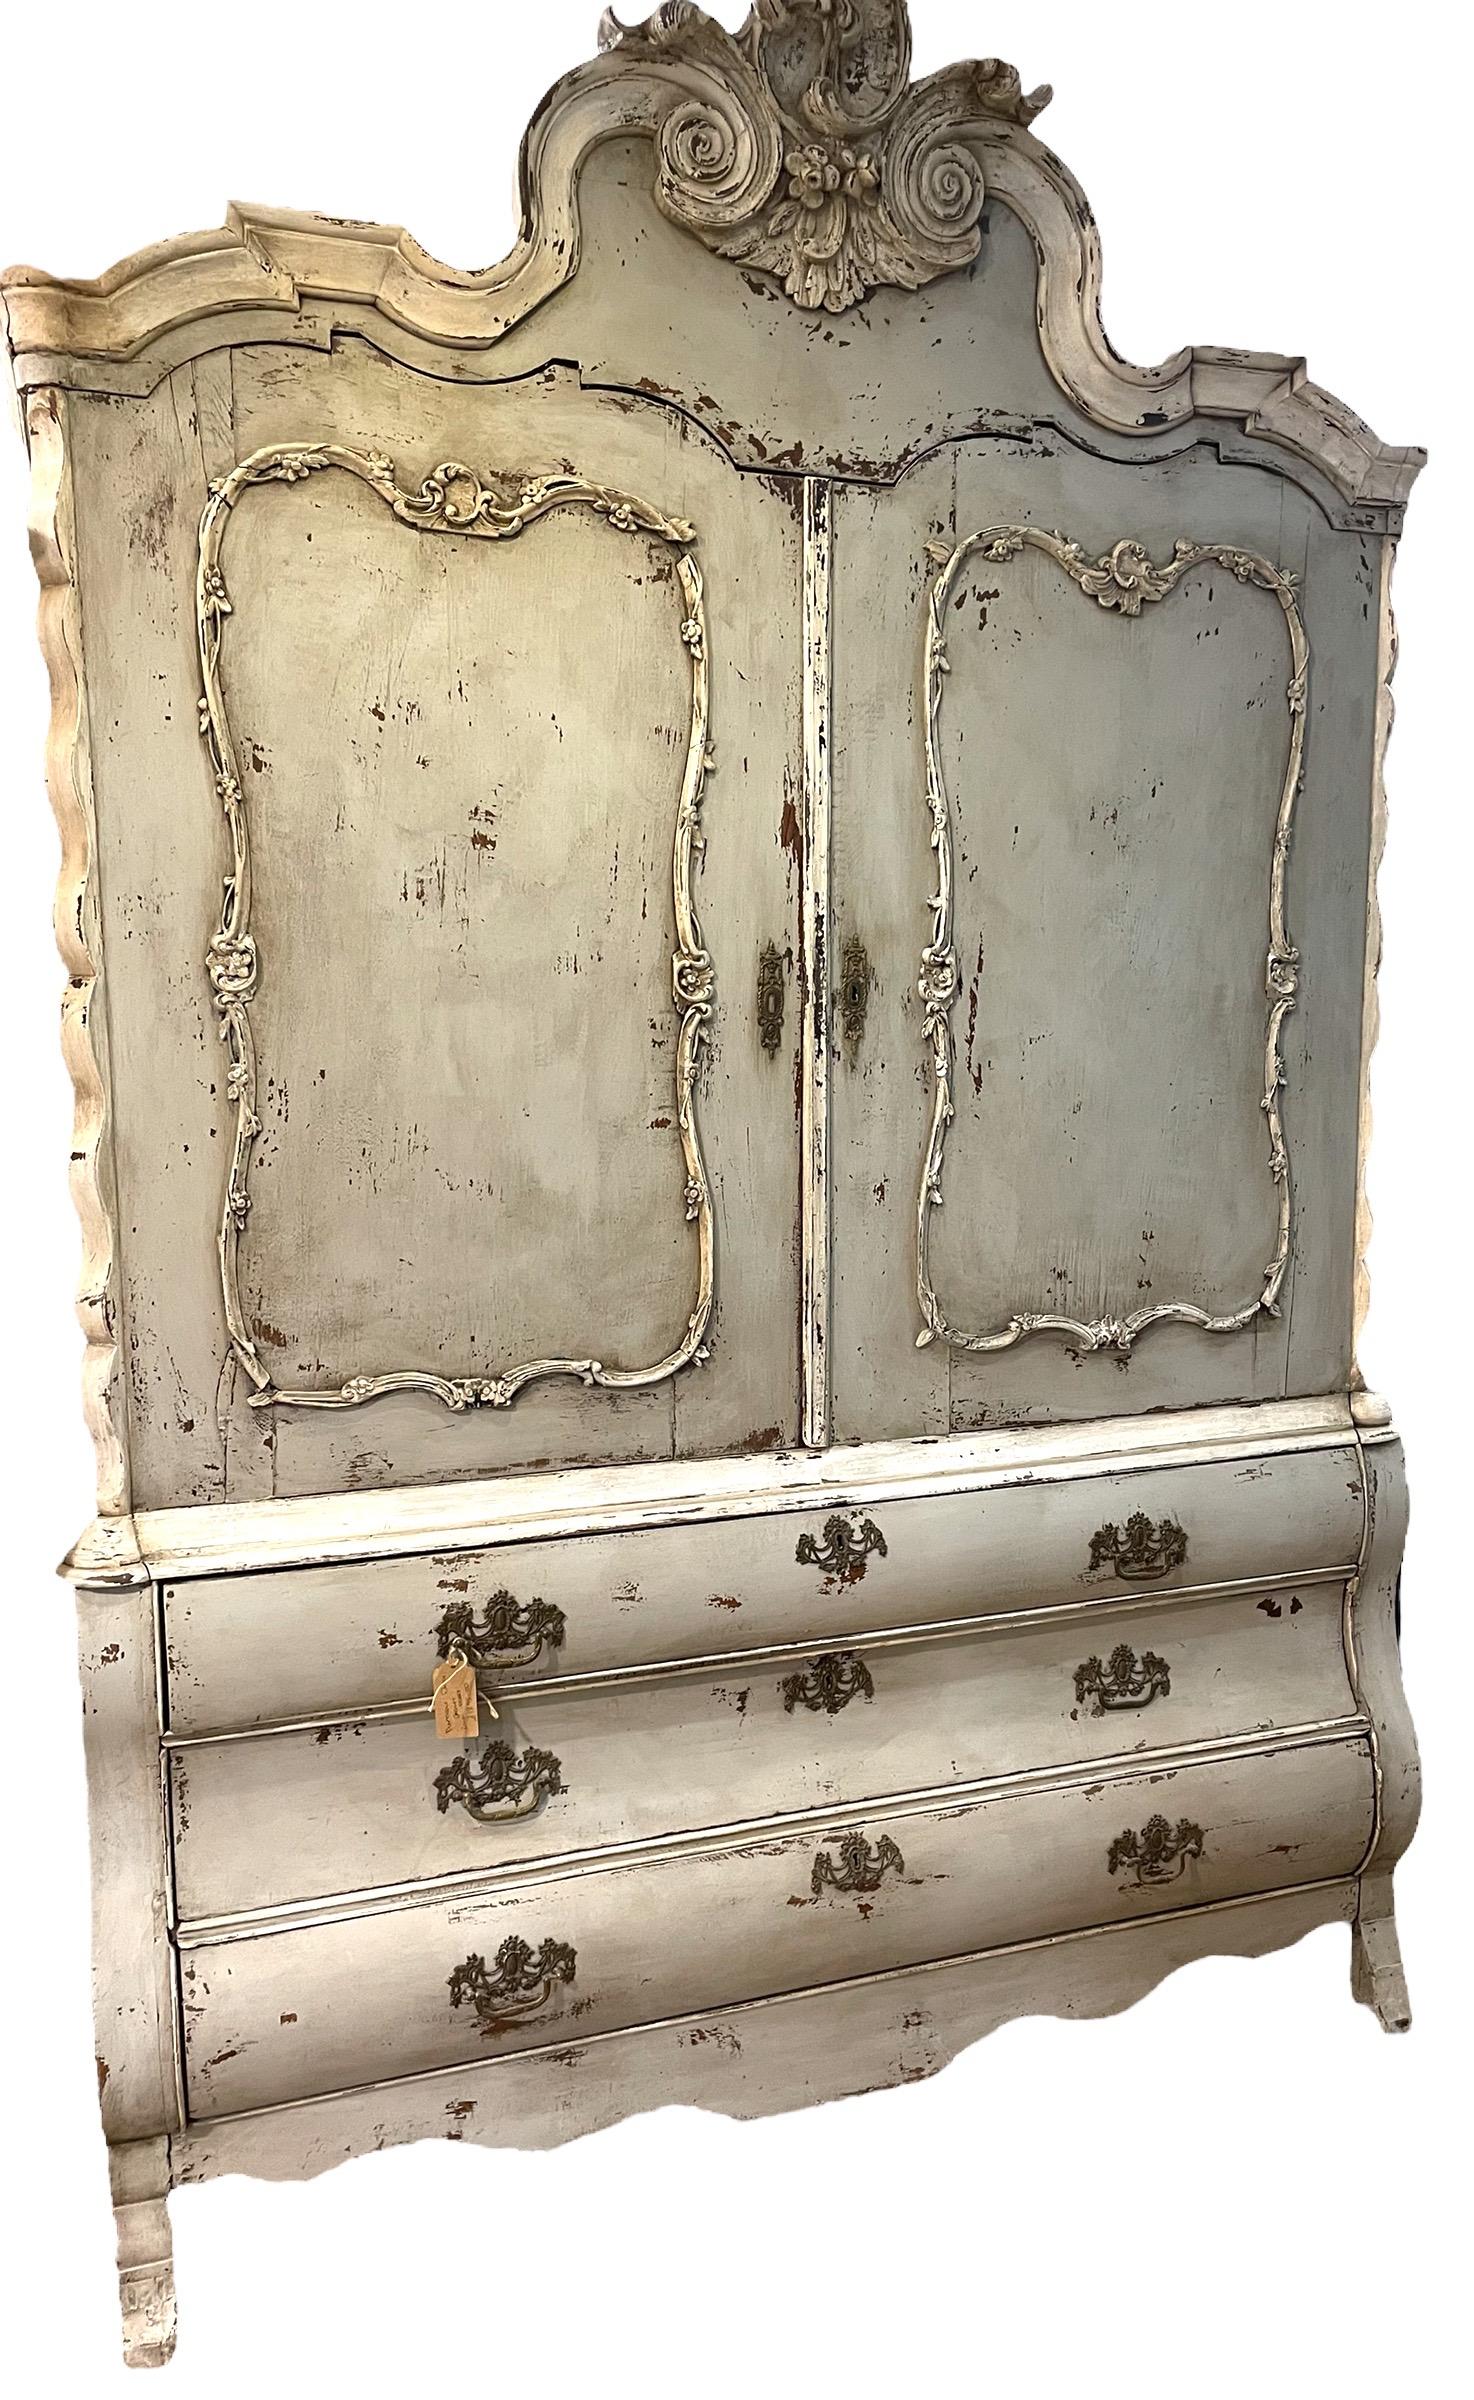 Dutch Oak Wäscheschrank Schrank.

Hergestellt im 18. Jahrhundert die Kabinett Arbeit ist immer noch hervorragend zu diesem Tag, diese Stücke wurden oft für große Landhäuser für Küche oder Schlafzimmer Gebrauch gemacht, hat dies eine zwei Tür offen